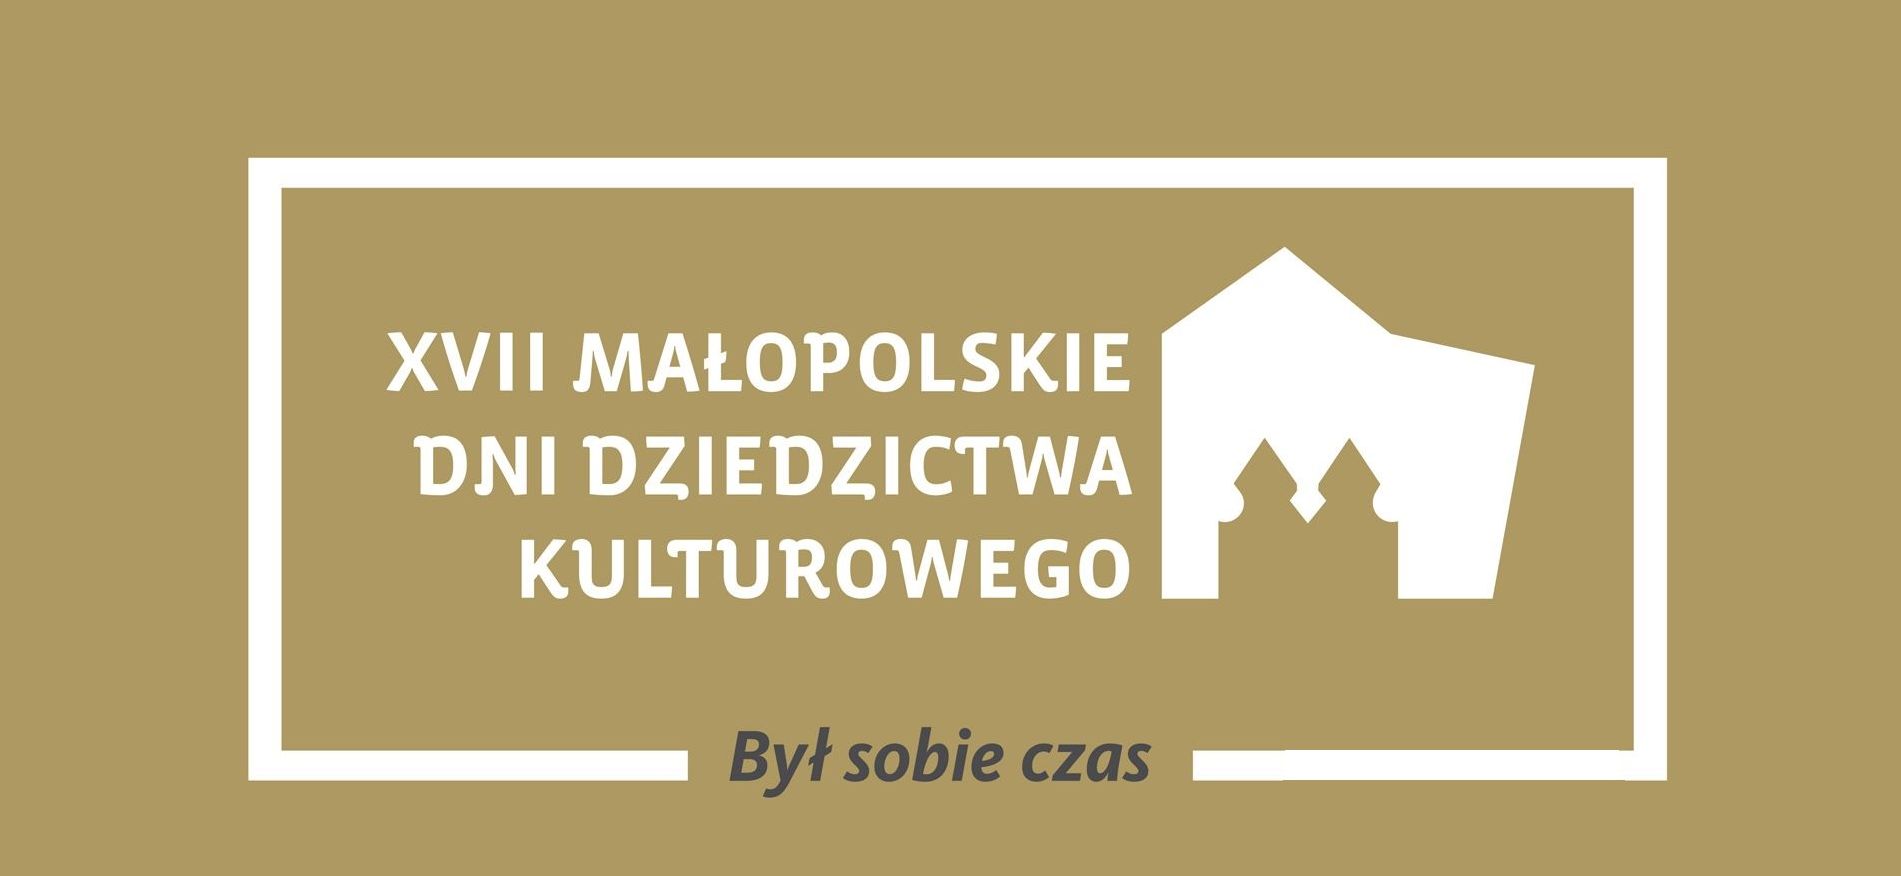 Małopolskie Dni Dziedzictwa Kulturowego 2015